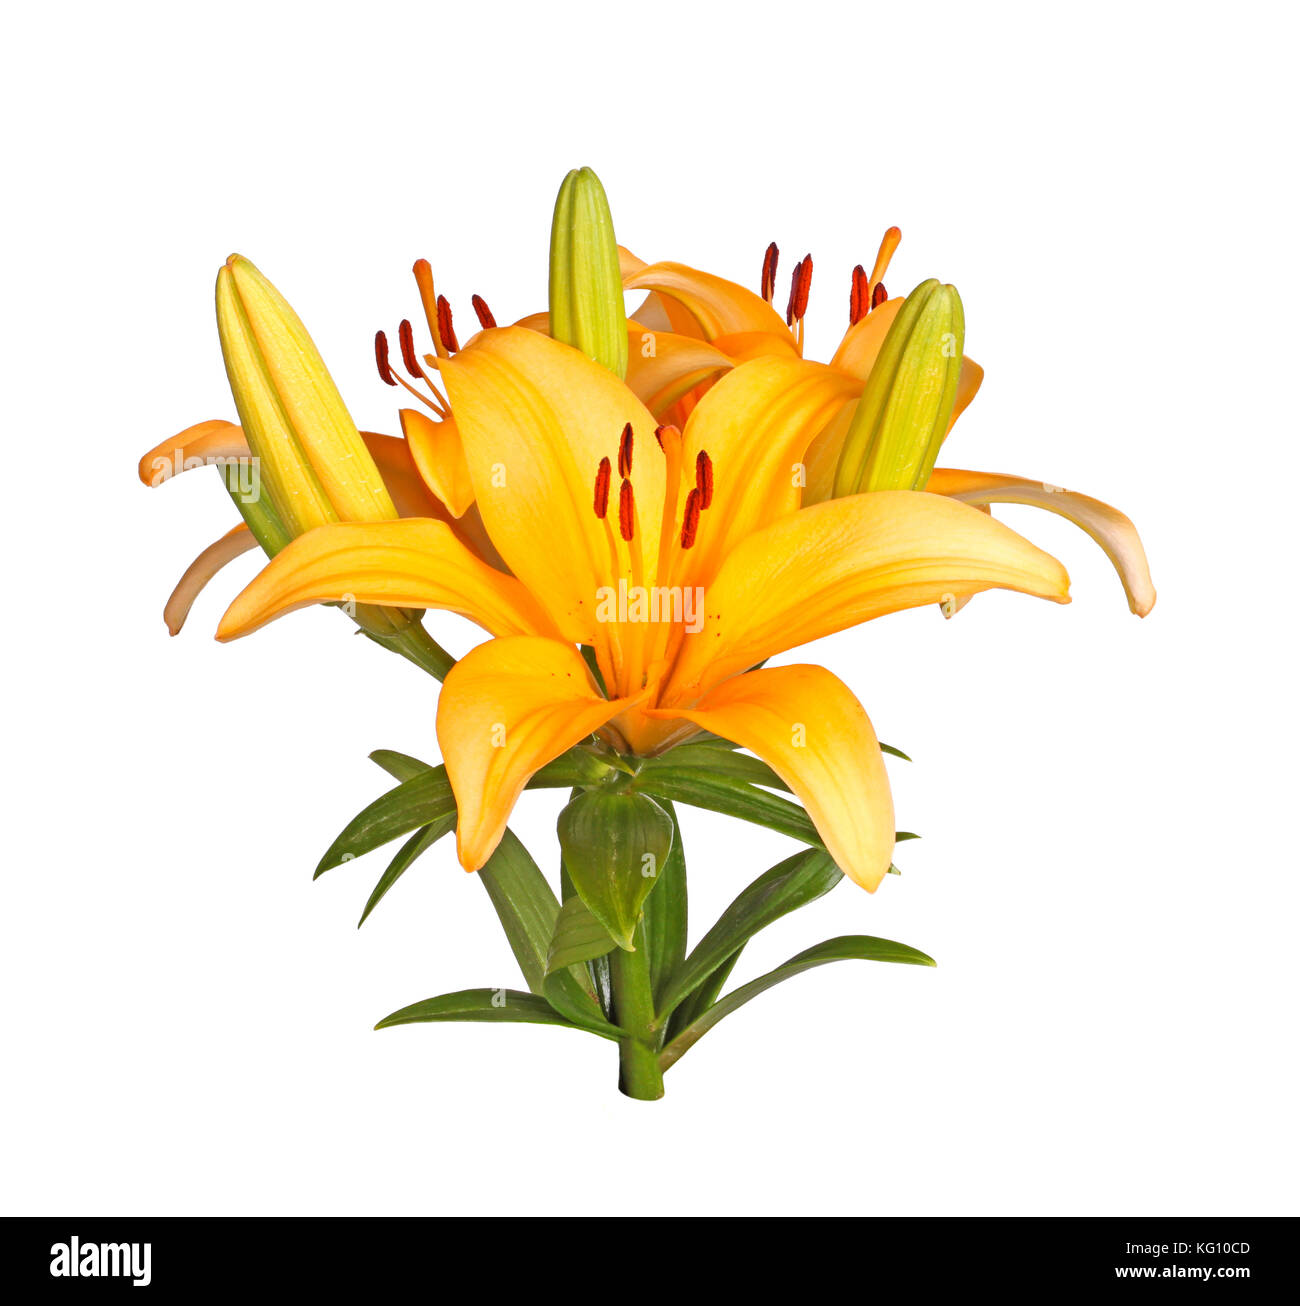 Tige simple avec des fleurs orange vif d'un tournesol hybride liily isolé sur fond blanc Banque D'Images